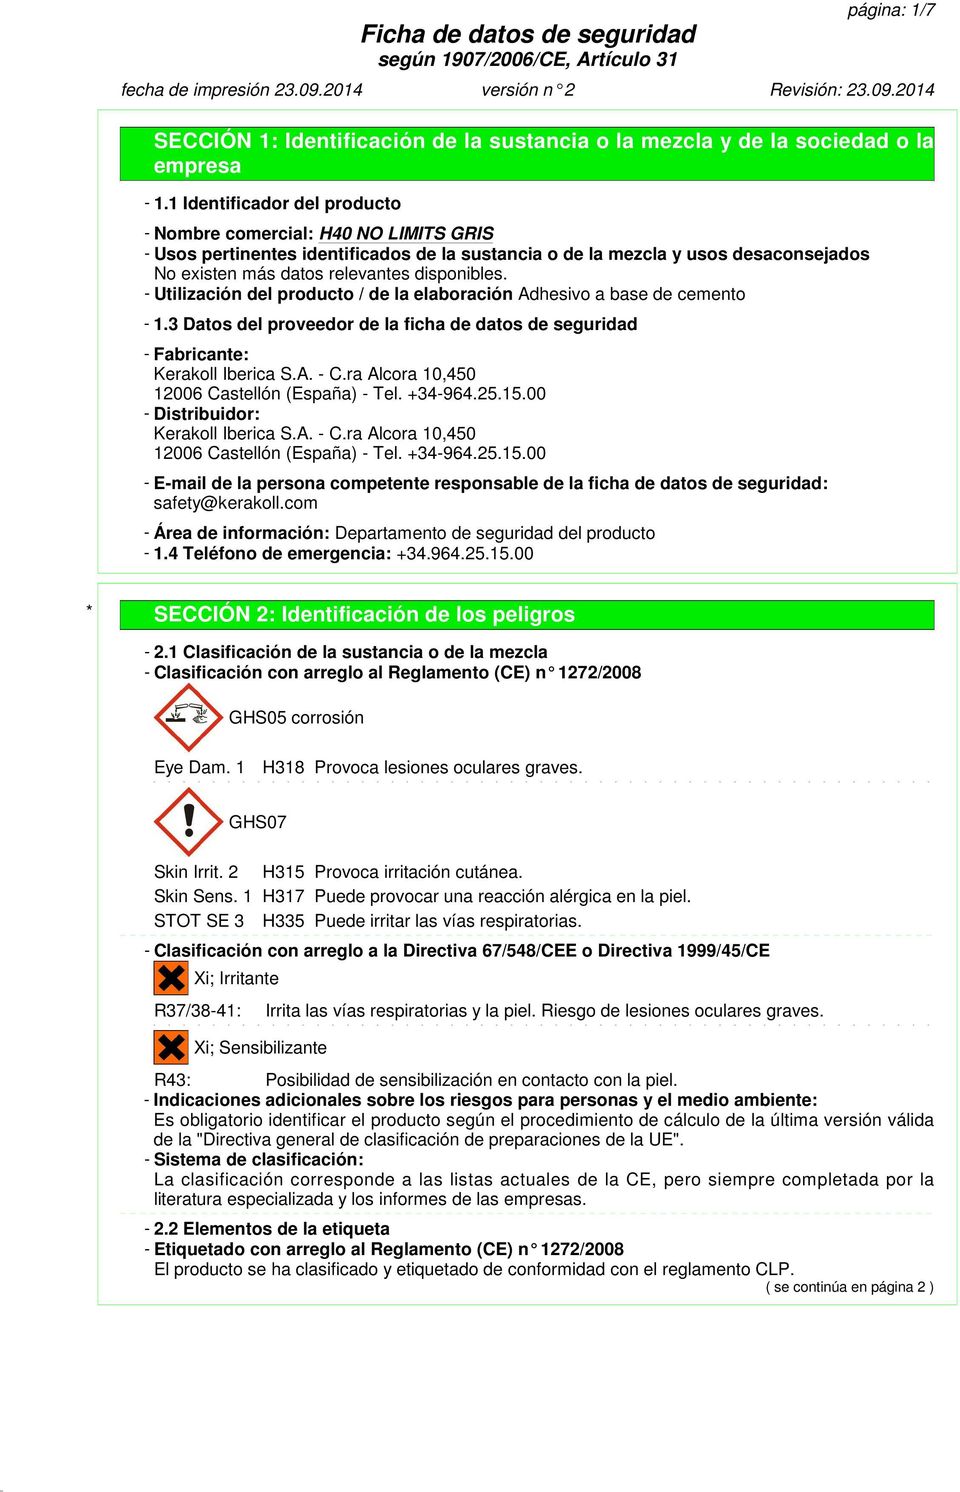 3 Datos del proveedor de la ficha de datos de seguridad - Fabricante: Kerakoll Iberica S.A. - C.ra Alcora 10,450 12006 Castellón (España) - Tel. +34-964.25.15.